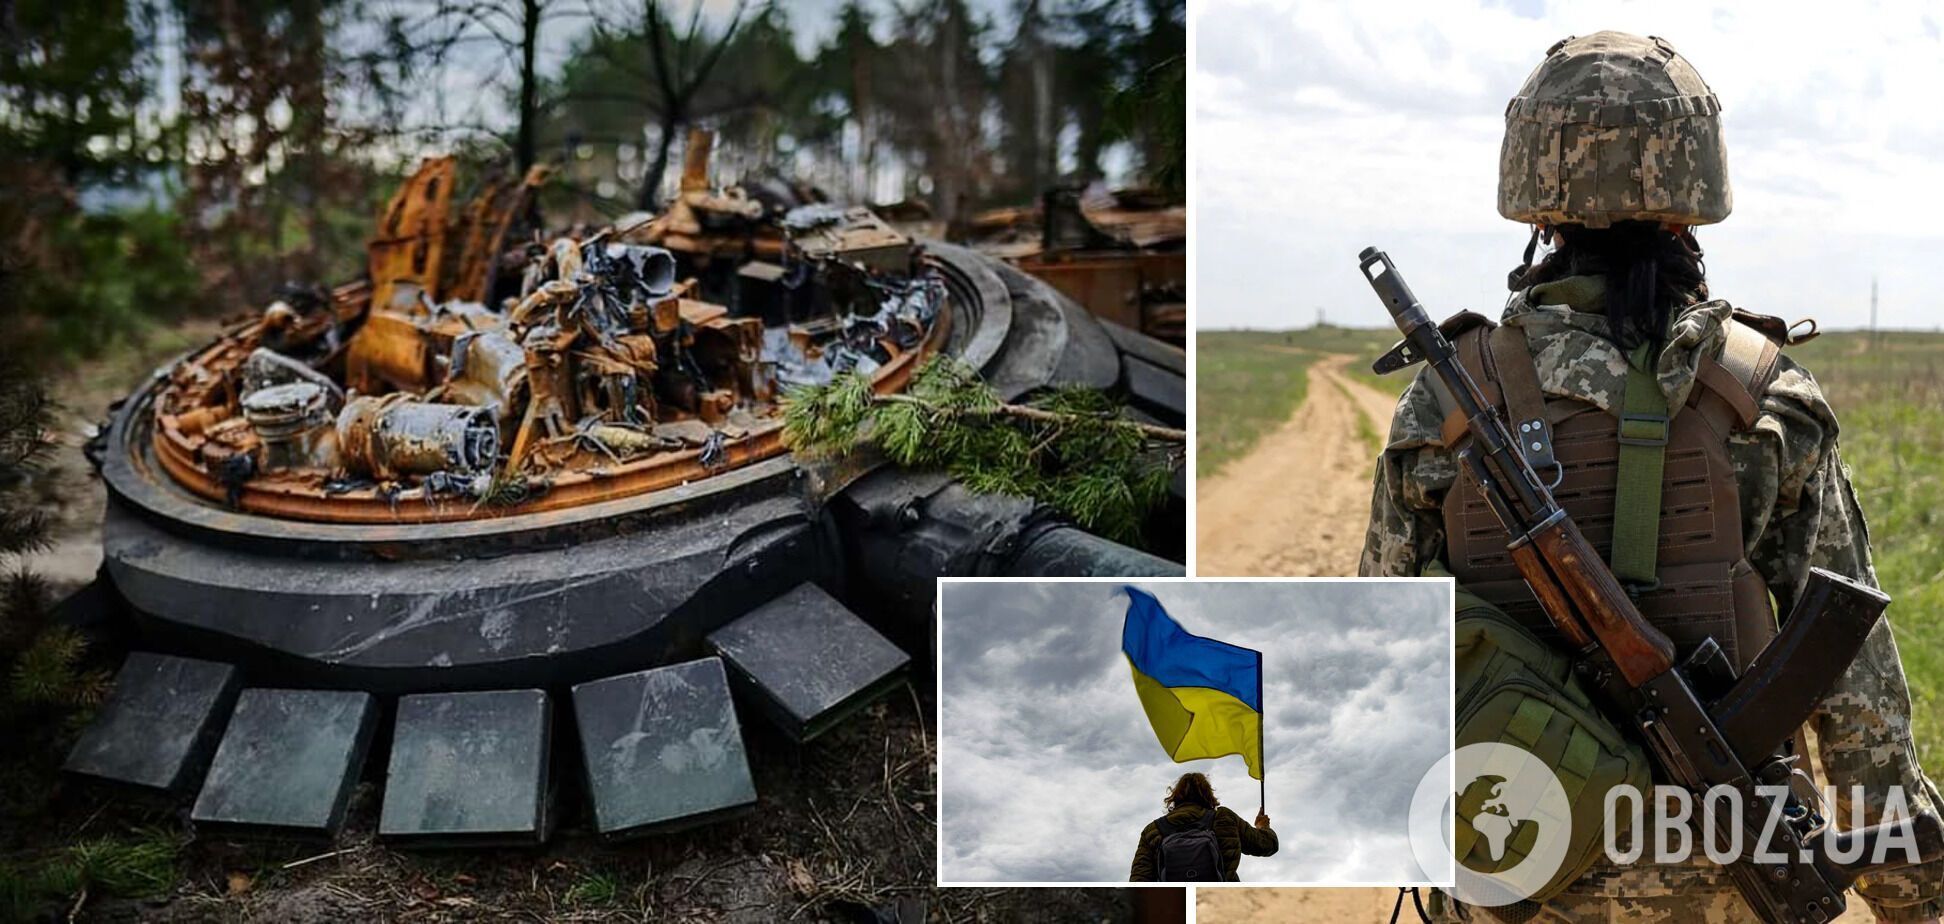 Україна, попри відставання в озброєнні, має реальний шанс перемогти агресора РФ